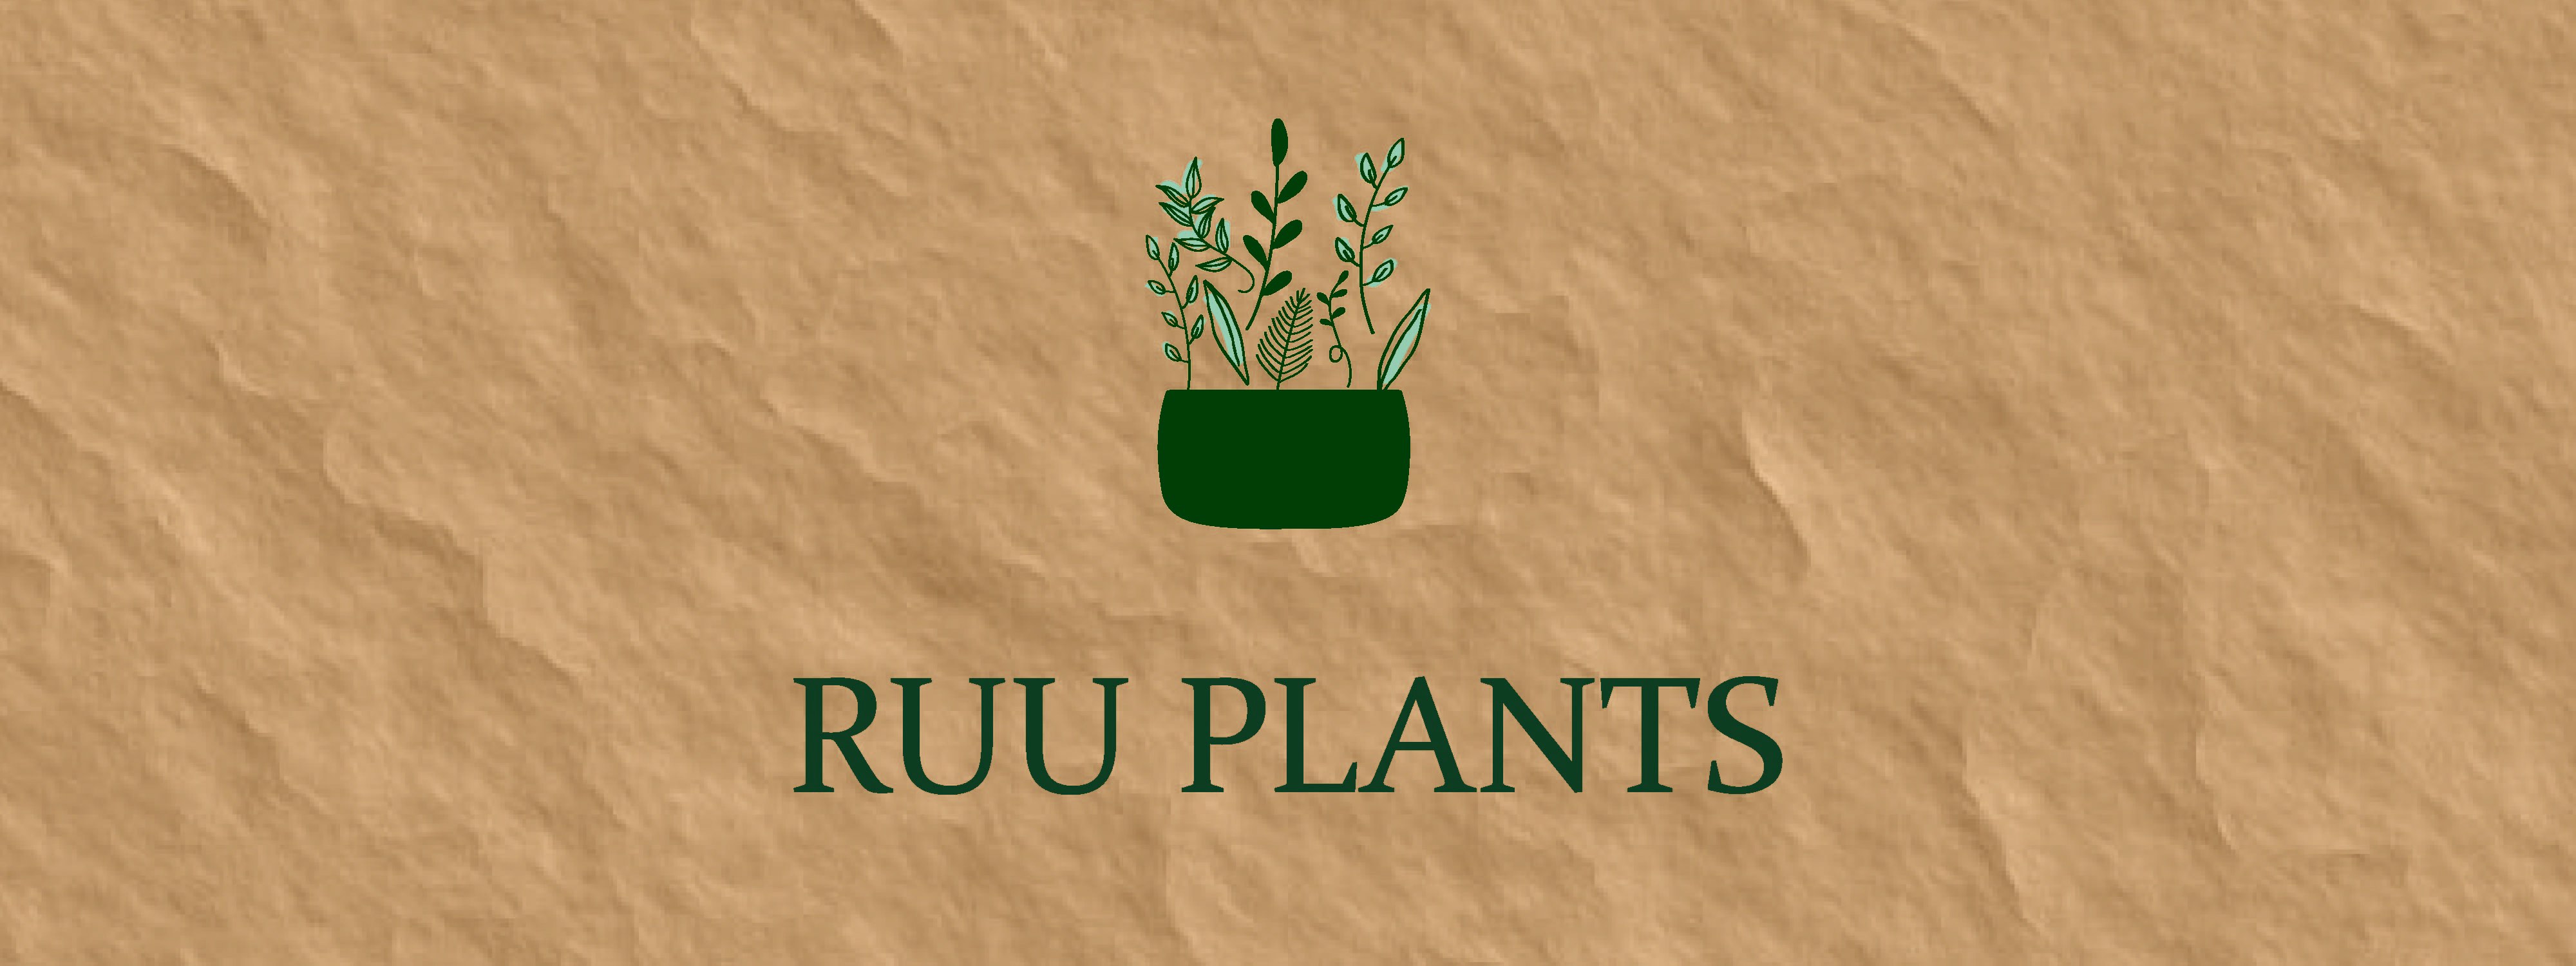 輸入植物のRUU PLANTS ロゴ